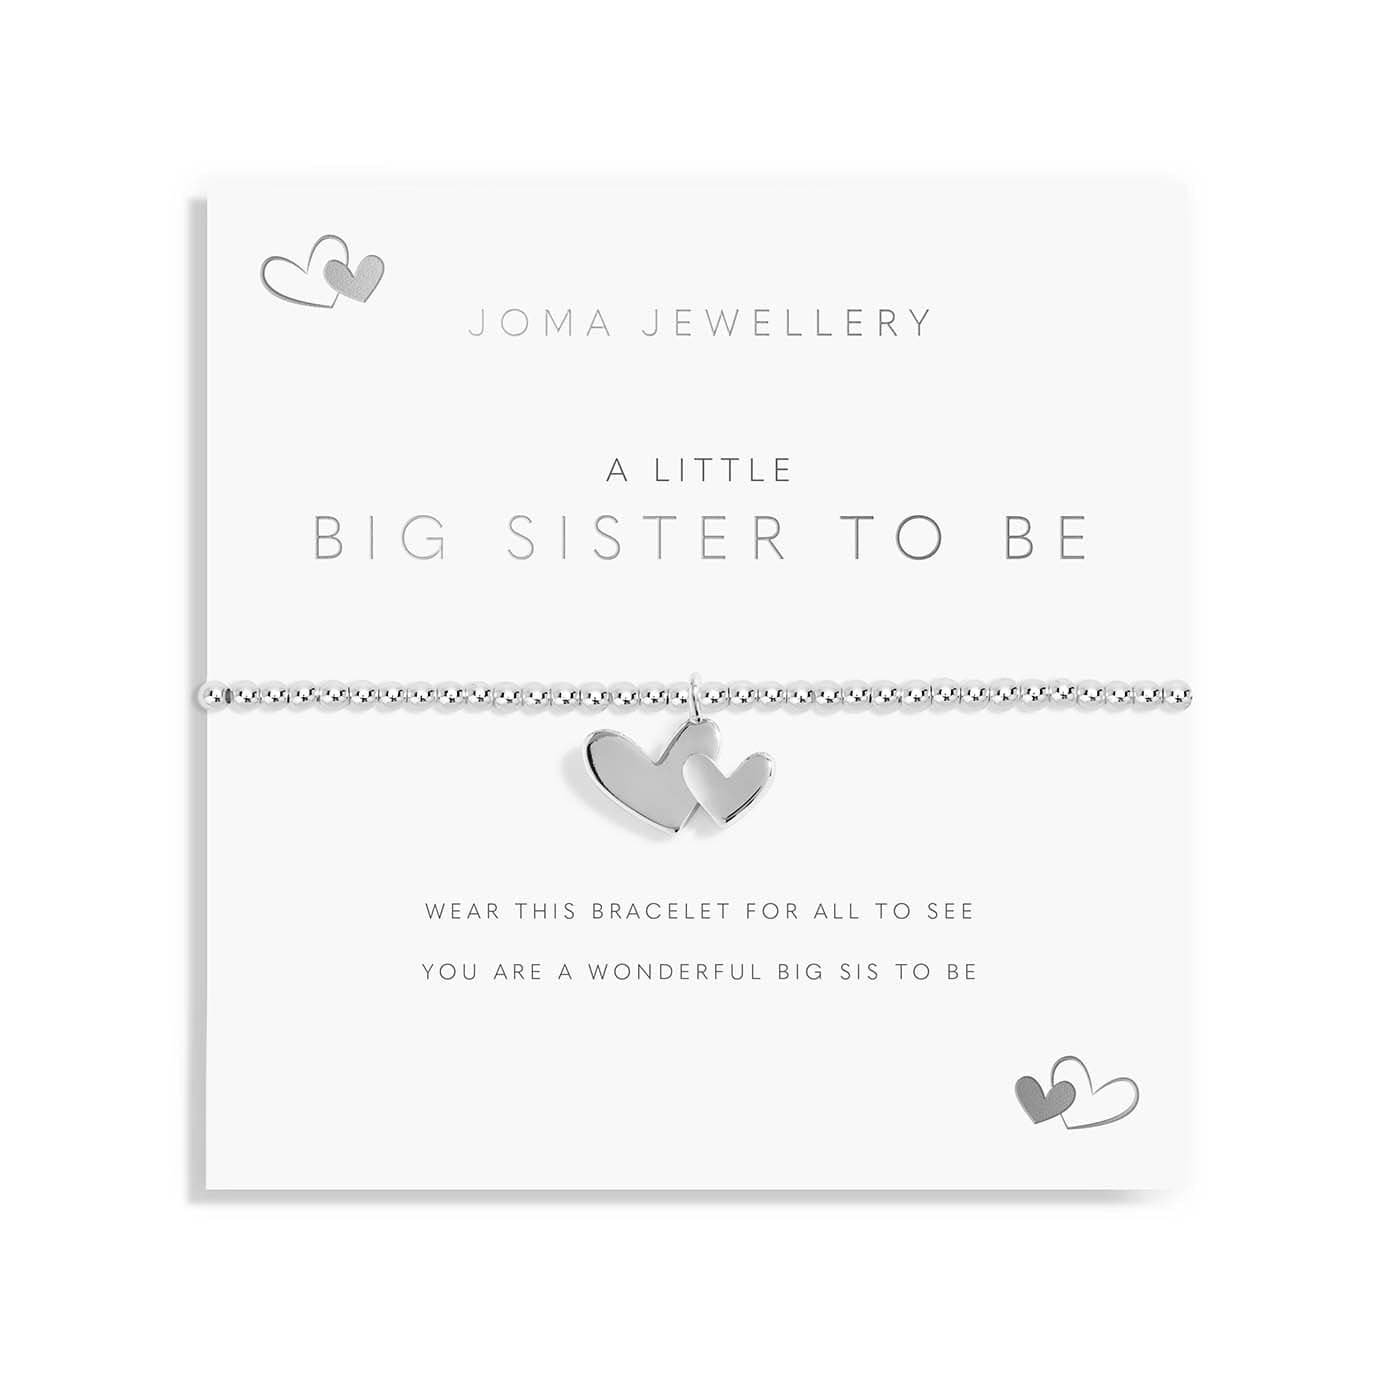 Joma Jewellery Childrens Bracelet Joma Jewellery Childrens Bracelet - A Little Big Sister To Be